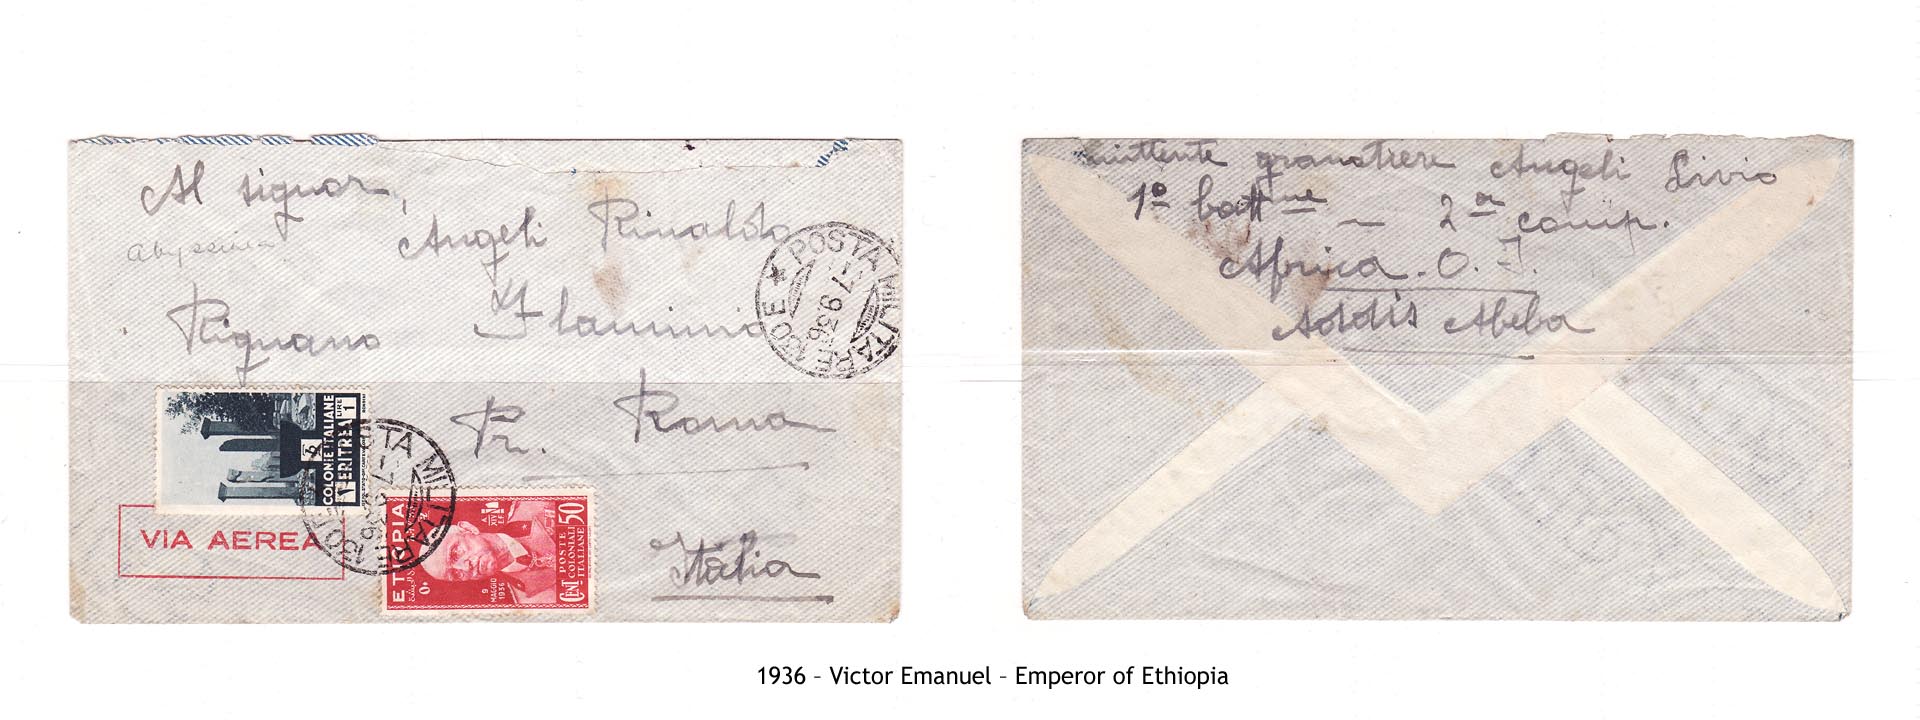 1936 – Etiopia Victor Emanuel – Emperor of Ethiopia